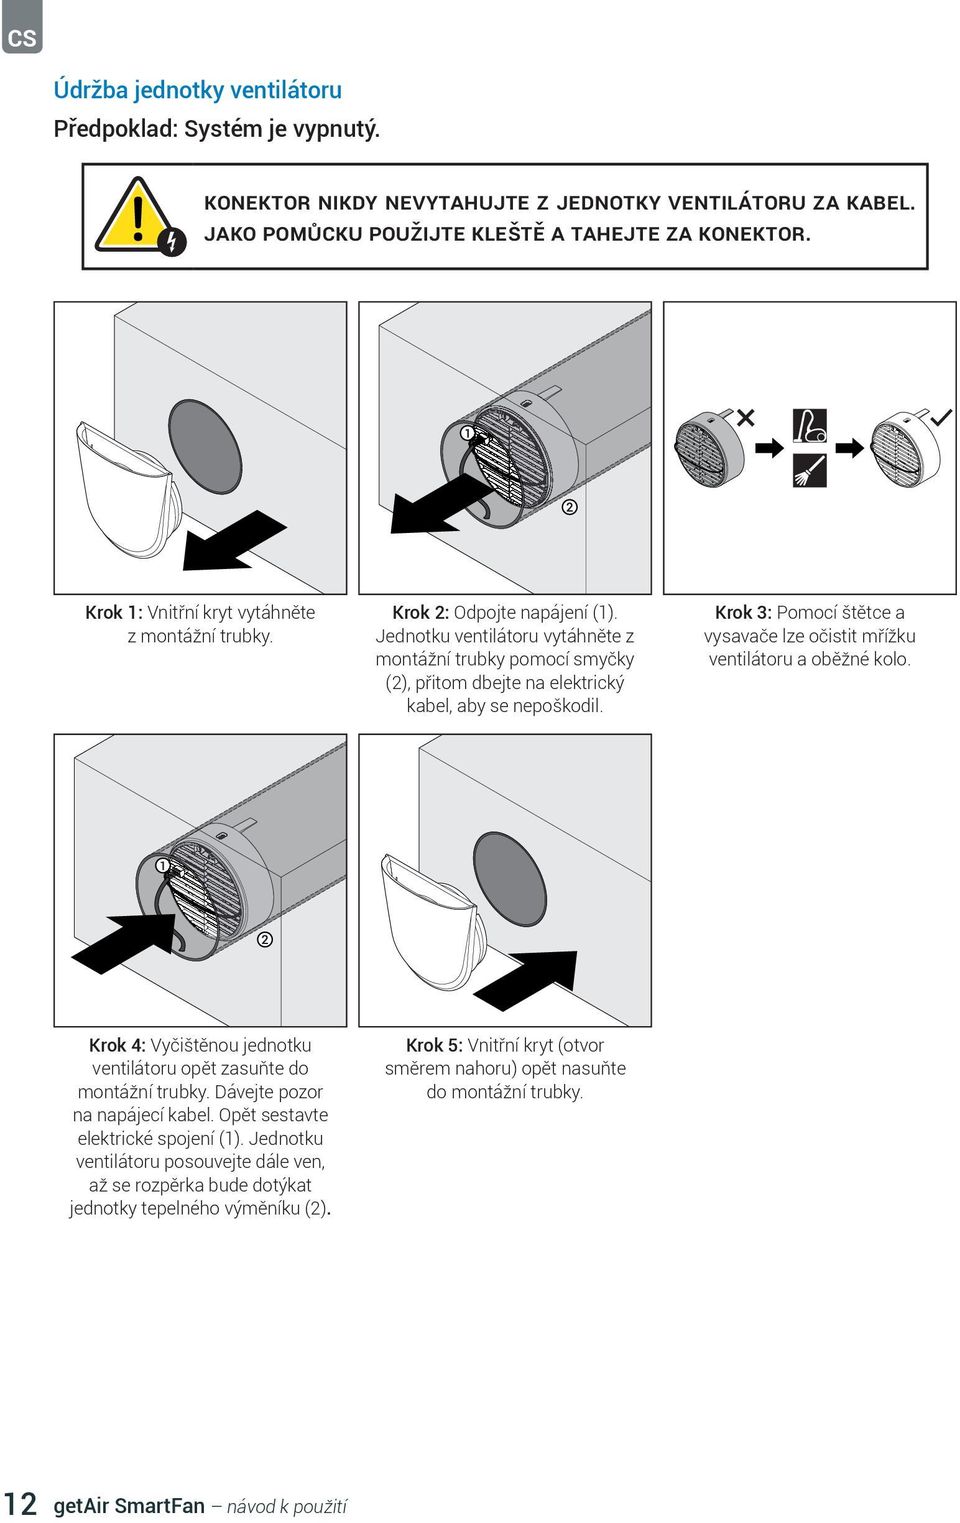 Jednotku ventilátoru vytáhněte z montážní trubky pomocí smyčky (2), přitom dbejte na elektrický kabel, aby se nepoškodil. Krok 3: Pomocí štětce a vysavače lze očistit mřížku ventilátoru a oběžné kolo.